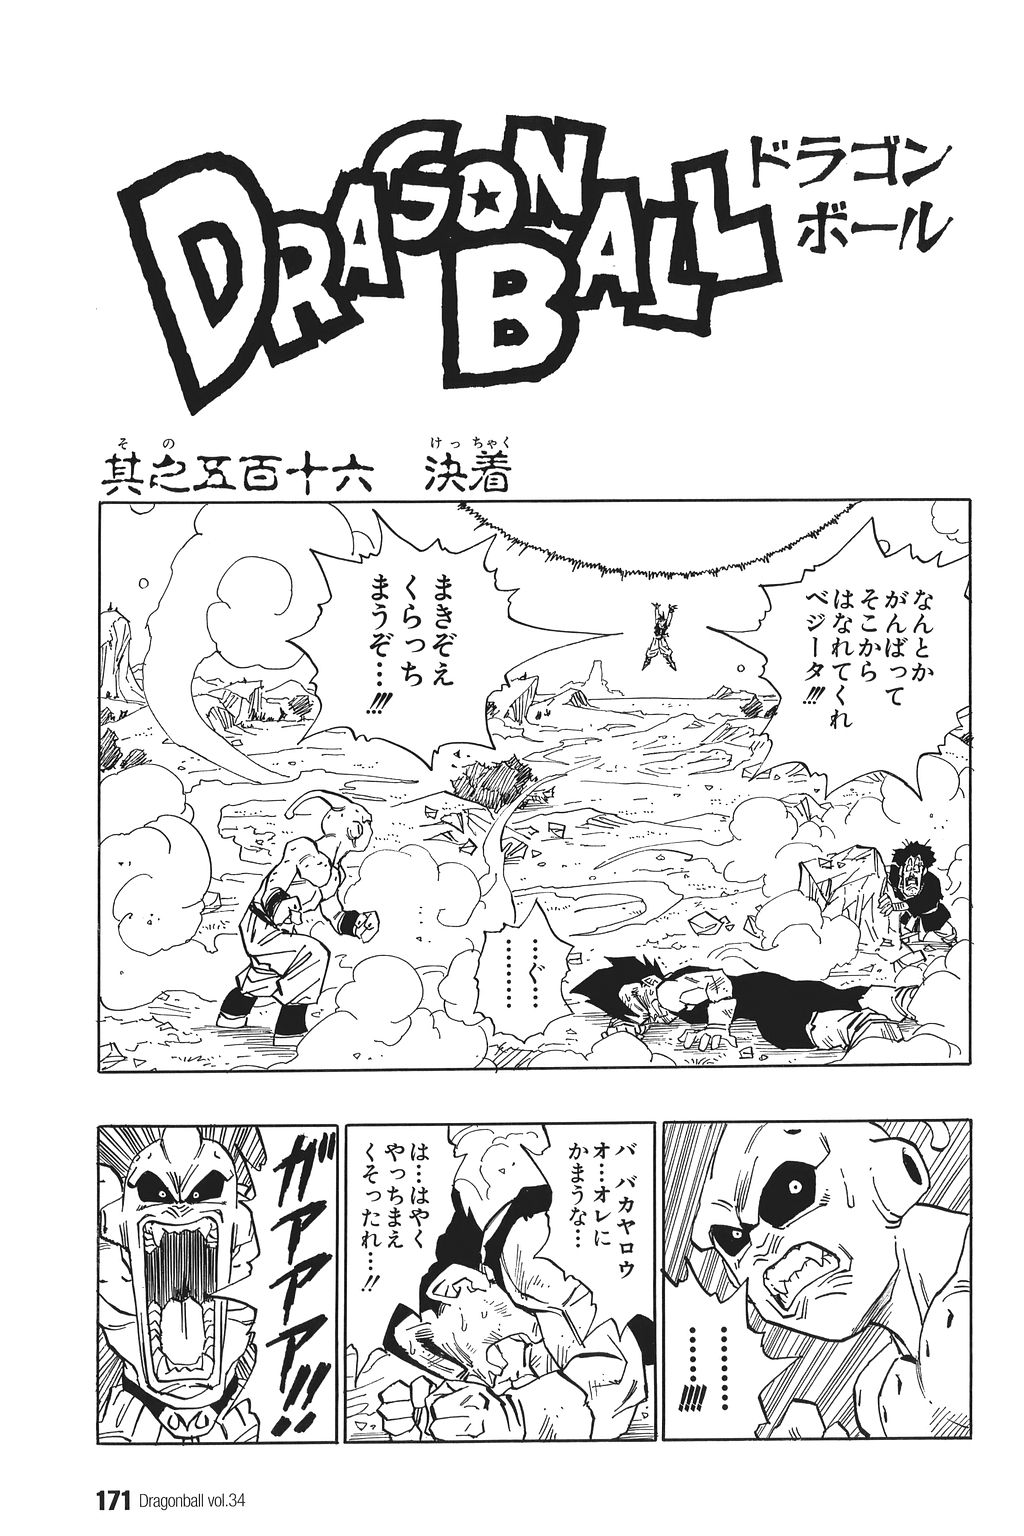 Dragon Ball Mangá Vol. 1 a 42 (COMPLETO, COLEÇÃO), DB e DBZ